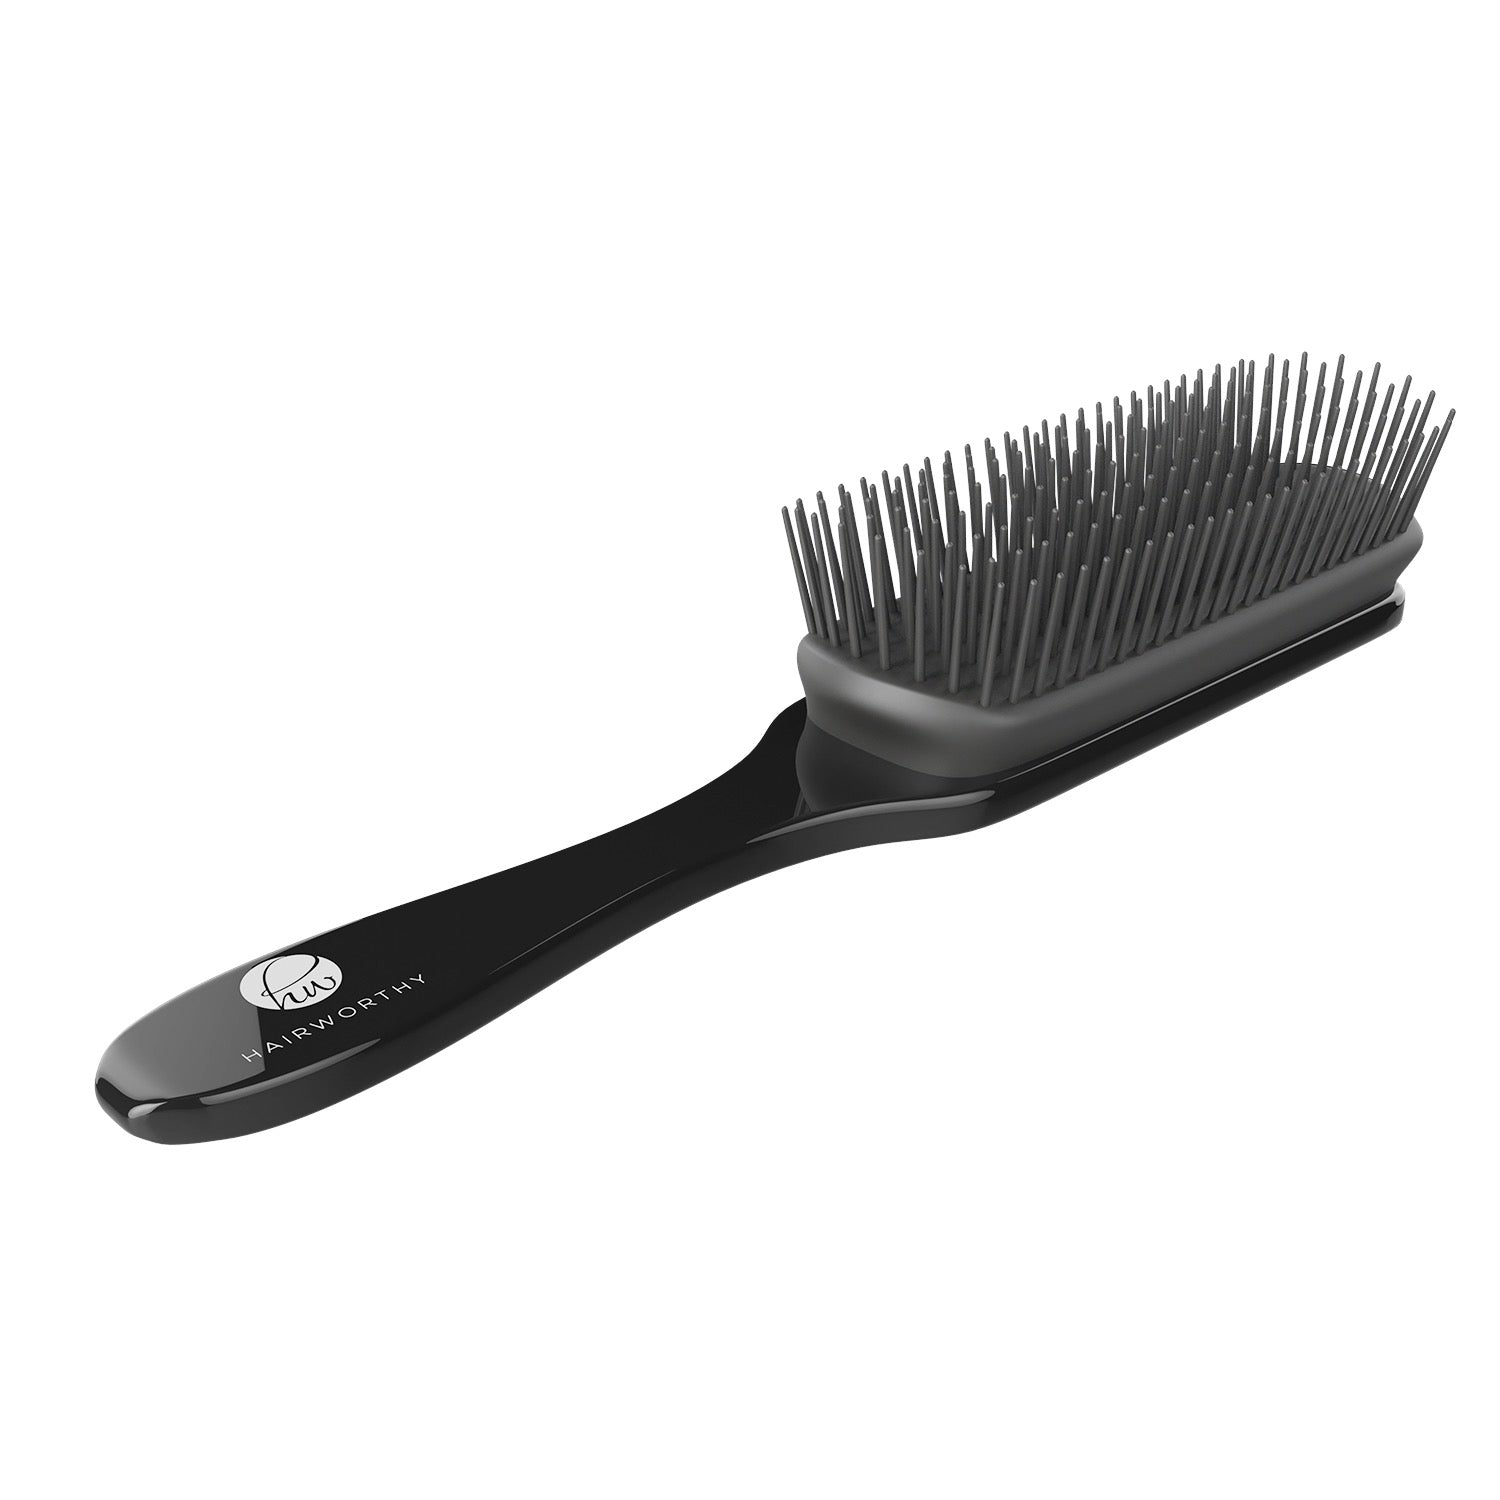 Hairworthy Hairembrace Styling brush - HAB 